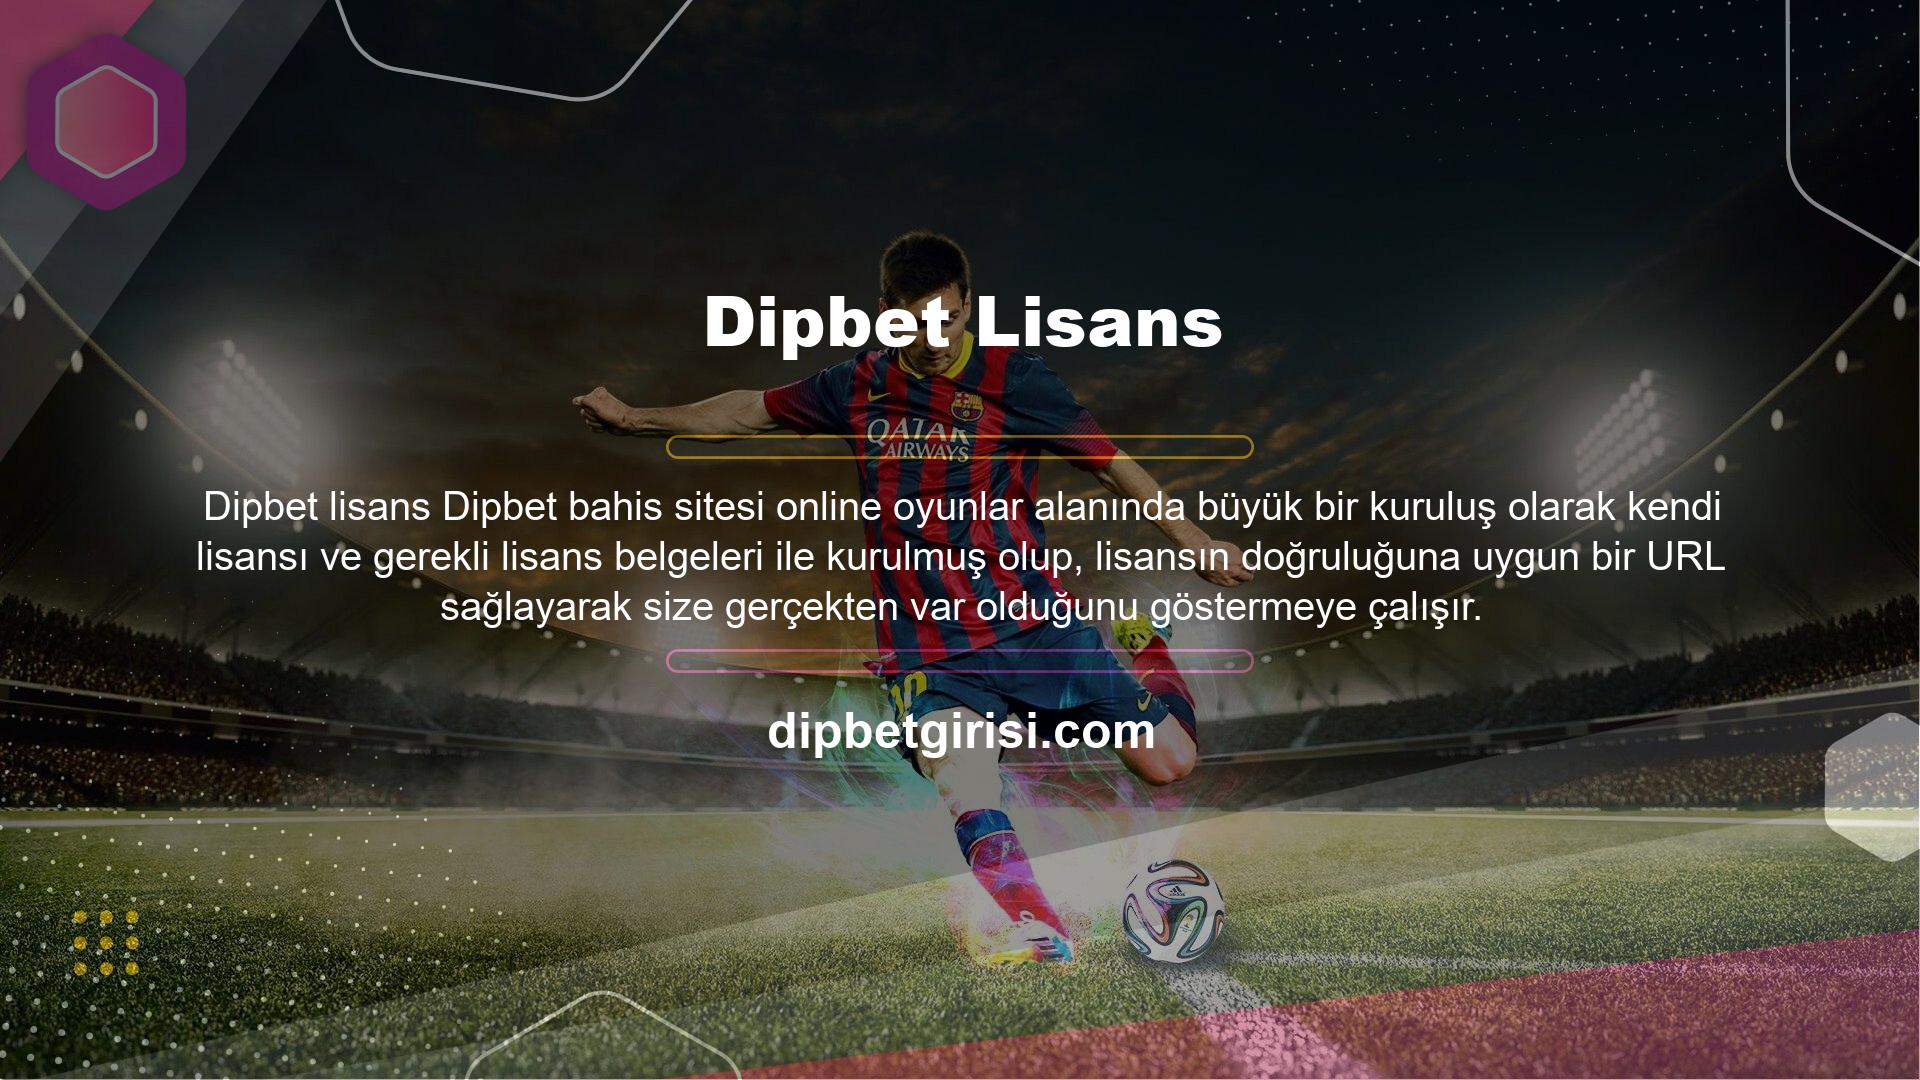 Üstelik ünlü bahis sitelerini sitenizde sergilemek için oluşturulmuş büyük bir platform olan Dipbet çok büyük bir oyun firması ile anlaşması bulunmaktadır